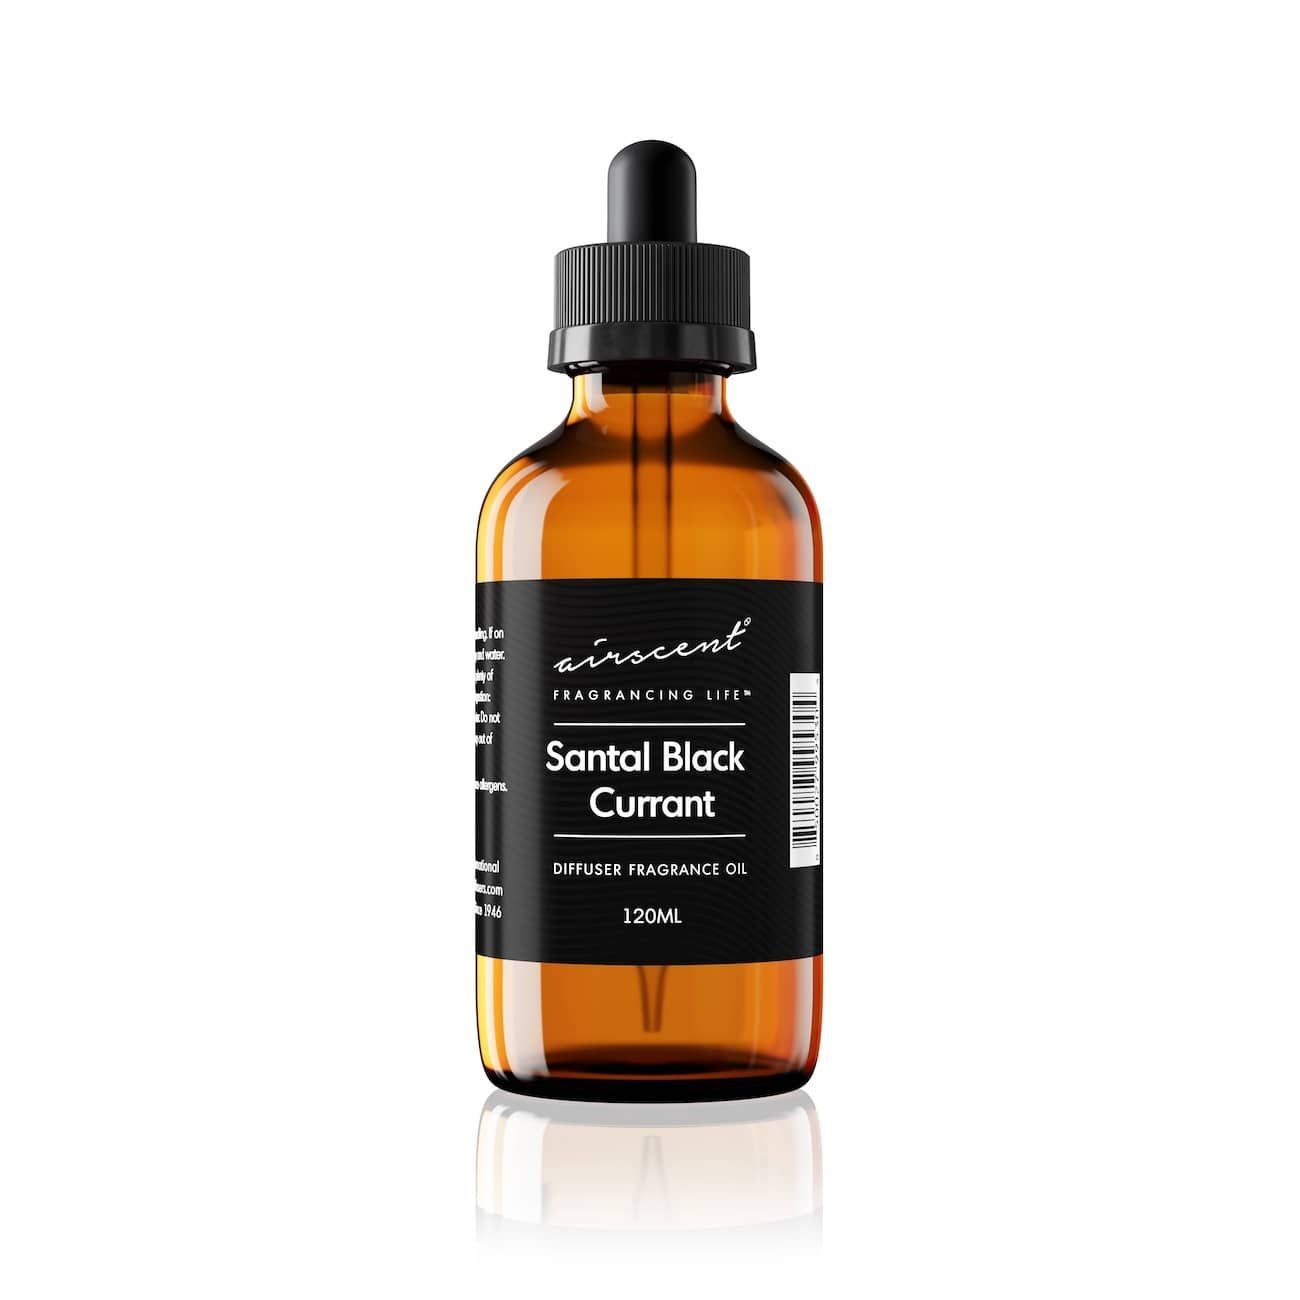 Santal Black Currant diffuser oil